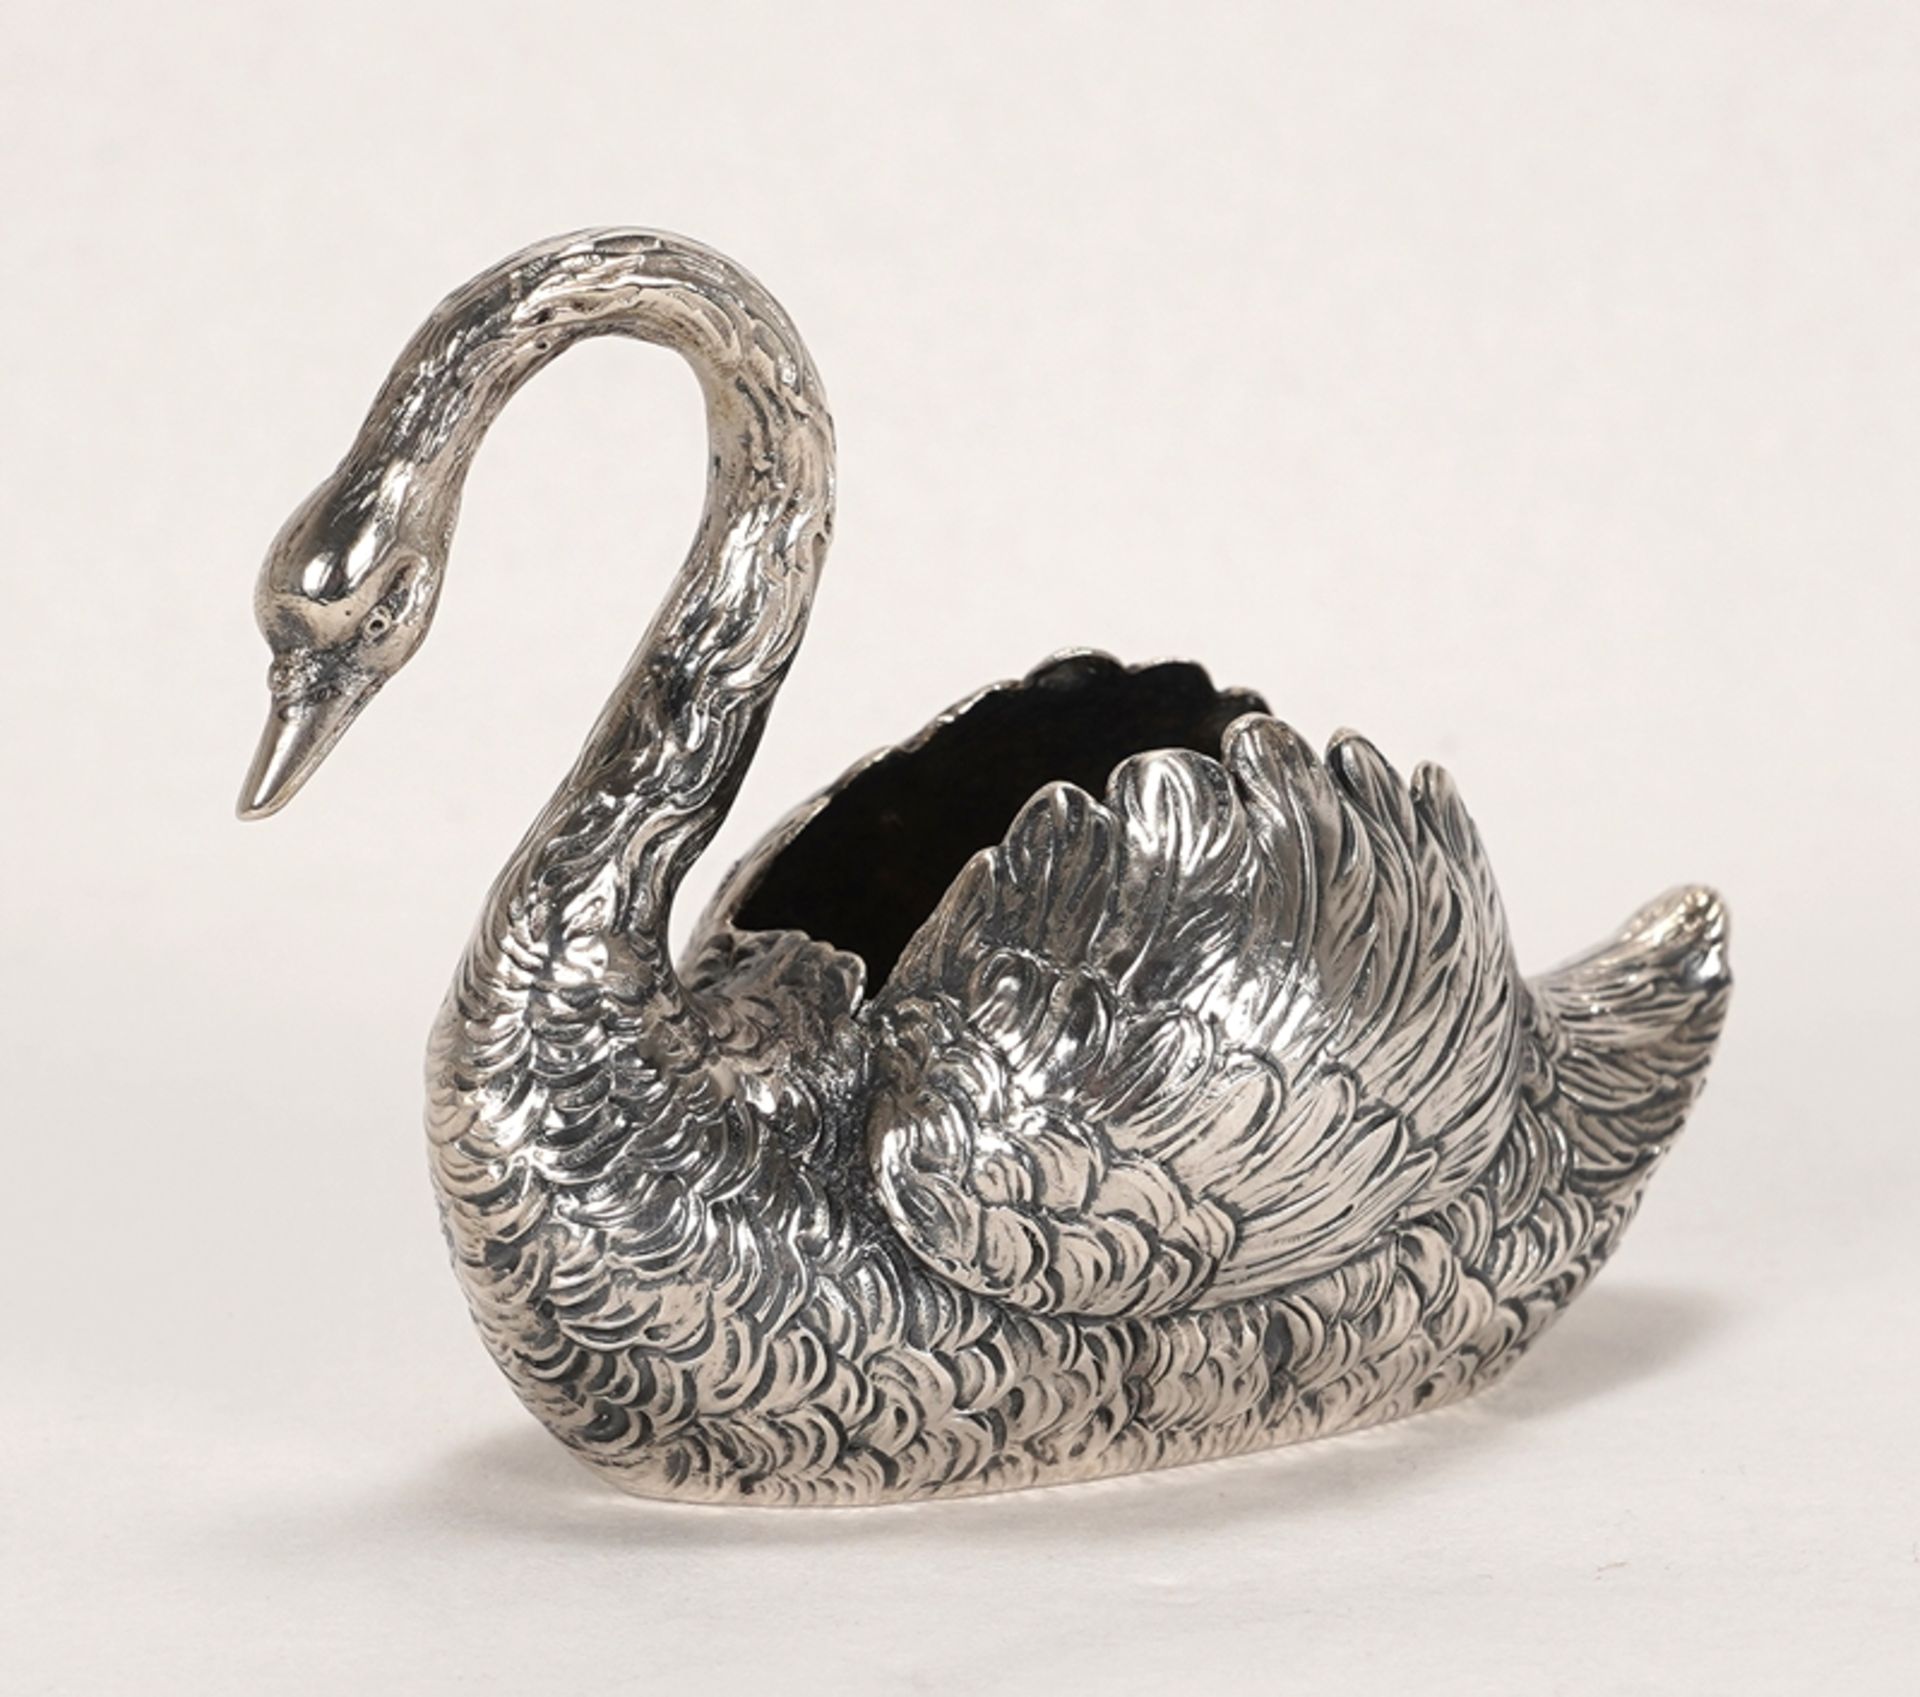 Schwanengefäß | Swan vessel